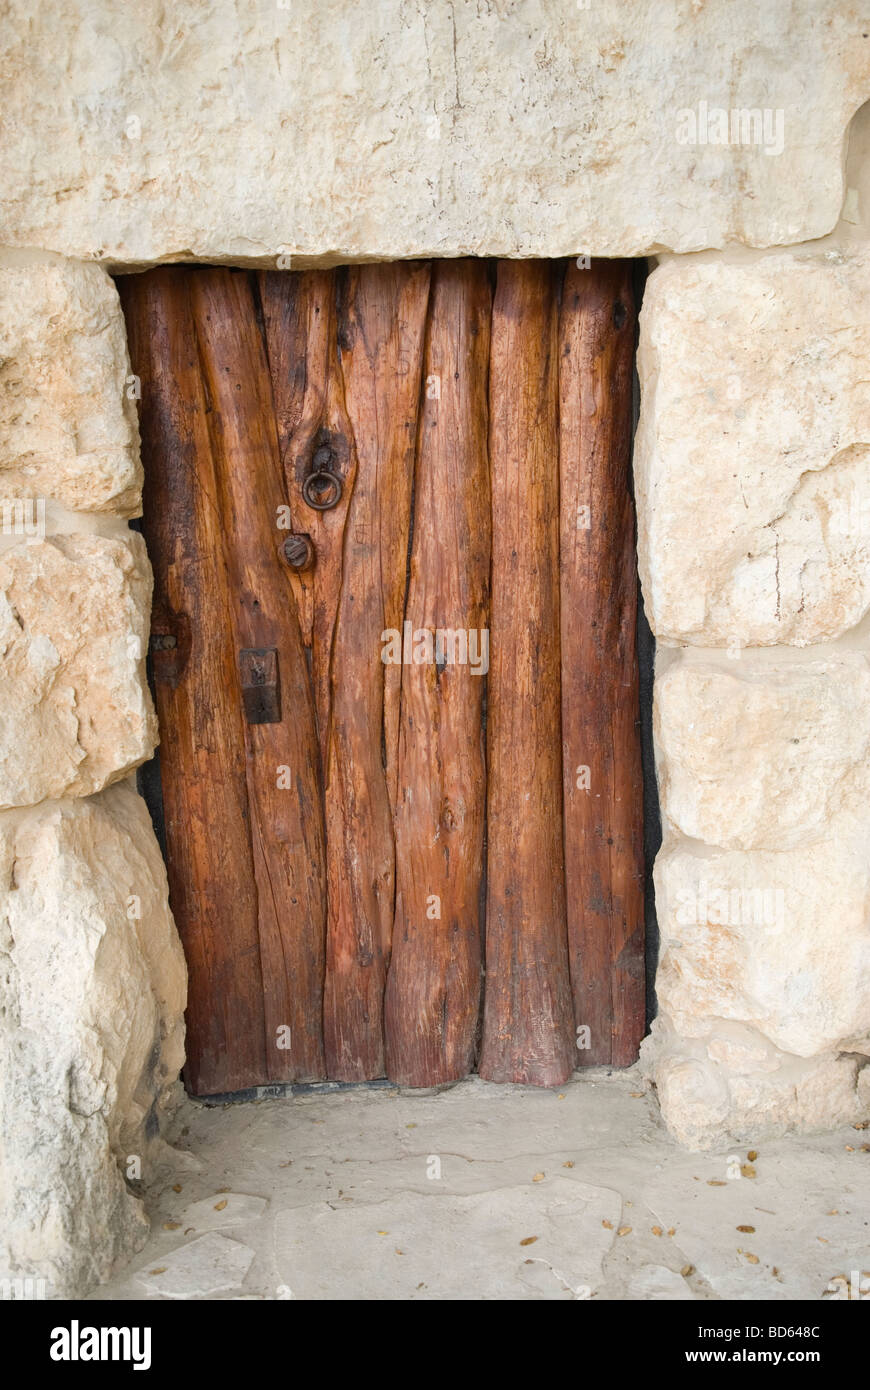 Vieille porte en bois, dans un monastère au Liban Moyen-Orient Asie Banque D'Images